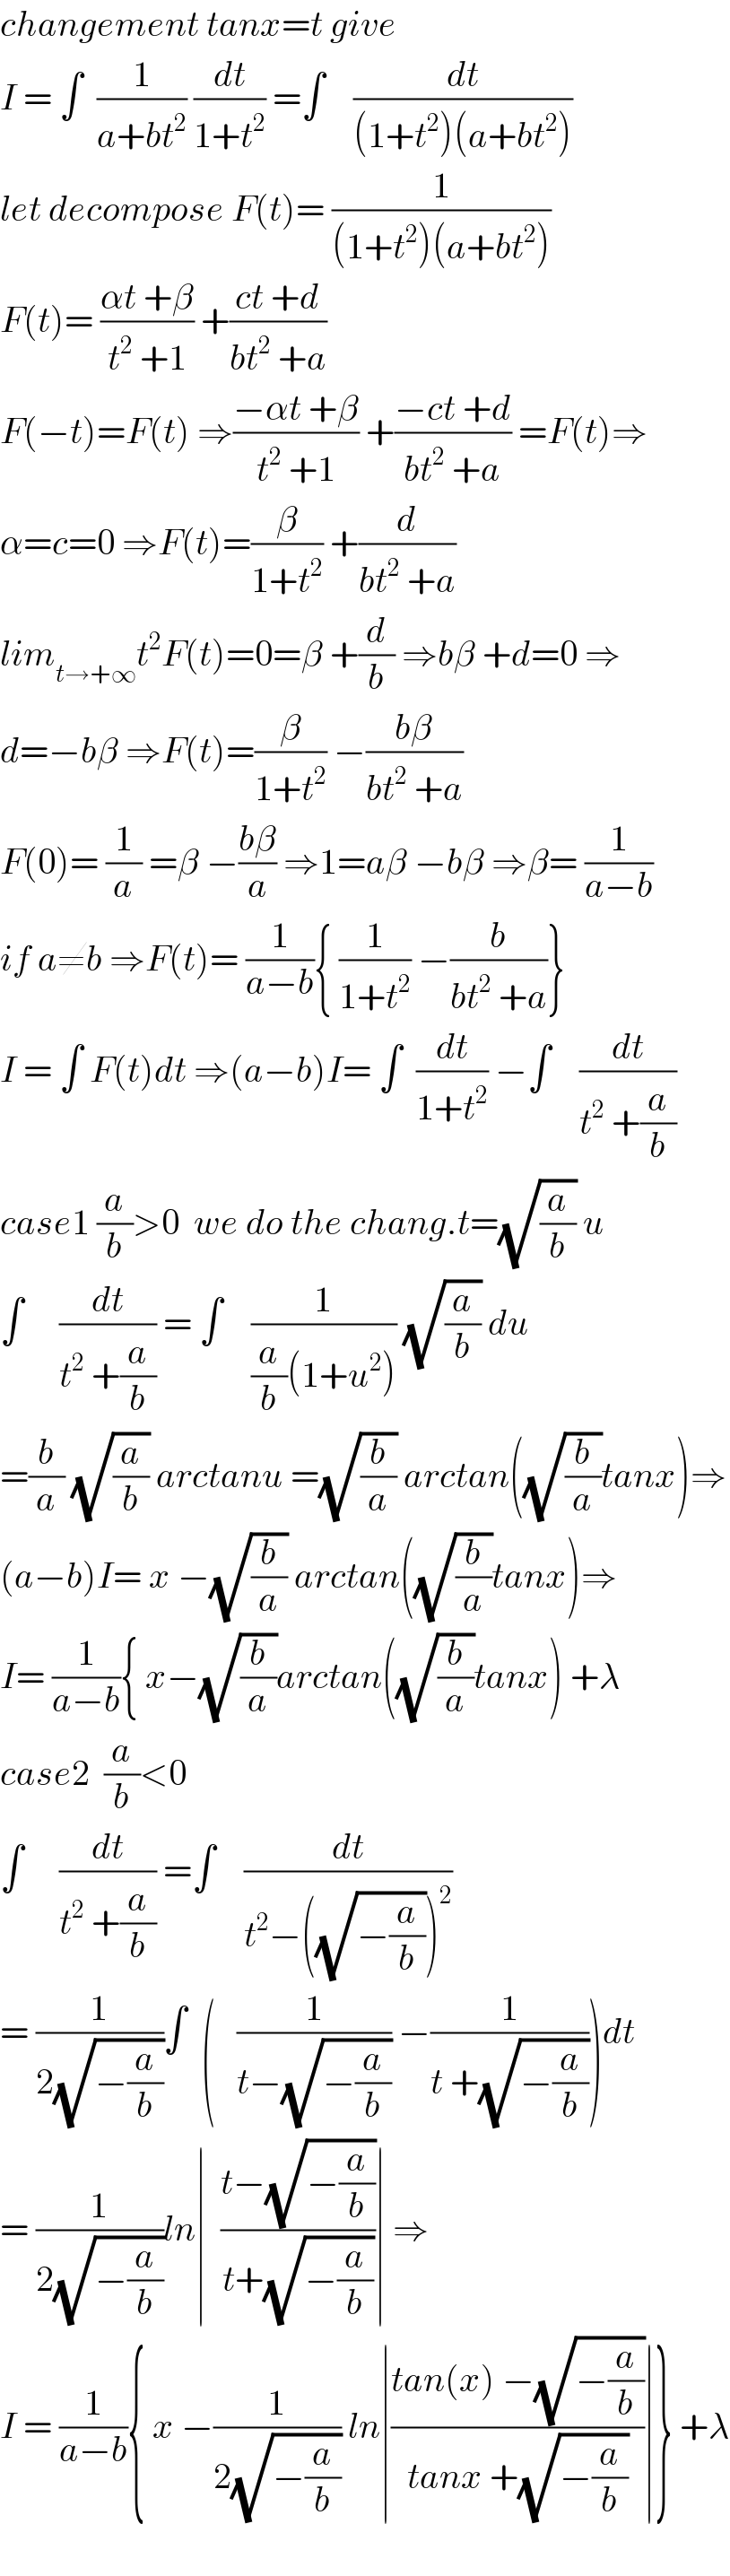 changement tanx=t give  I = ∫  (1/(a+bt^2 )) (dt/(1+t^2 )) =∫    (dt/((1+t^2 )(a+bt^2 )))  let decompose F(t)= (1/((1+t^2 )(a+bt^2 )))  F(t)= ((αt +β)/(t^2  +1)) +((ct +d)/(bt^2  +a))  F(−t)=F(t) ⇒((−αt +β)/(t^2  +1)) +((−ct +d)/(bt^2  +a)) =F(t)⇒  α=c=0 ⇒F(t)=(β/(1+t^2 )) +(d/(bt^2  +a))  lim_(t→+∞) t^2 F(t)=0=β +(d/b) ⇒bβ +d=0 ⇒  d=−bβ ⇒F(t)=(β/(1+t^2 )) −((bβ)/(bt^2  +a))  F(0)= (1/a) =β −((bβ)/a) ⇒1=aβ −bβ ⇒β= (1/(a−b))  if a≠b ⇒F(t)= (1/(a−b)){ (1/(1+t^2 )) −(b/(bt^2  +a))}  I = ∫ F(t)dt ⇒(a−b)I= ∫  (dt/(1+t^2 )) −∫    (dt/(t^2  +(a/b)))  case1 (a/b)>0  we do the chang.t=(√(a/b)) u  ∫     (dt/(t^2  +(a/b))) = ∫    (1/((a/b)(1+u^2 ))) (√(a/b)) du  =(b/a) (√(a/b)) arctanu =(√(b/a)) arctan((√(b/a))tanx)⇒  (a−b)I= x −(√(b/a)) arctan((√(b/a))tanx)⇒  I= (1/(a−b)){ x−(√(b/a))arctan((√(b/a))tanx) +λ  case2  (a/b)<0     ∫     (dt/(t^2  +(a/b))) =∫    (dt/(t^2 −((√(−(a/b))))^2 ))  = (1/(2(√(−(a/b)))))∫  (   (1/(t−(√(−(a/b))))) −(1/(t +(√(−(a/b))))))dt  = (1/(2(√(−(a/b)))))ln∣  ((t−(√(−(a/b))))/(t+(√(−(a/b)))))∣ ⇒  I = (1/(a−b)){ x −(1/(2(√(−(a/b))))) ln∣((tan(x) −(√(−(a/b))))/(tanx +(√(−(a/b)))))∣} +λ    